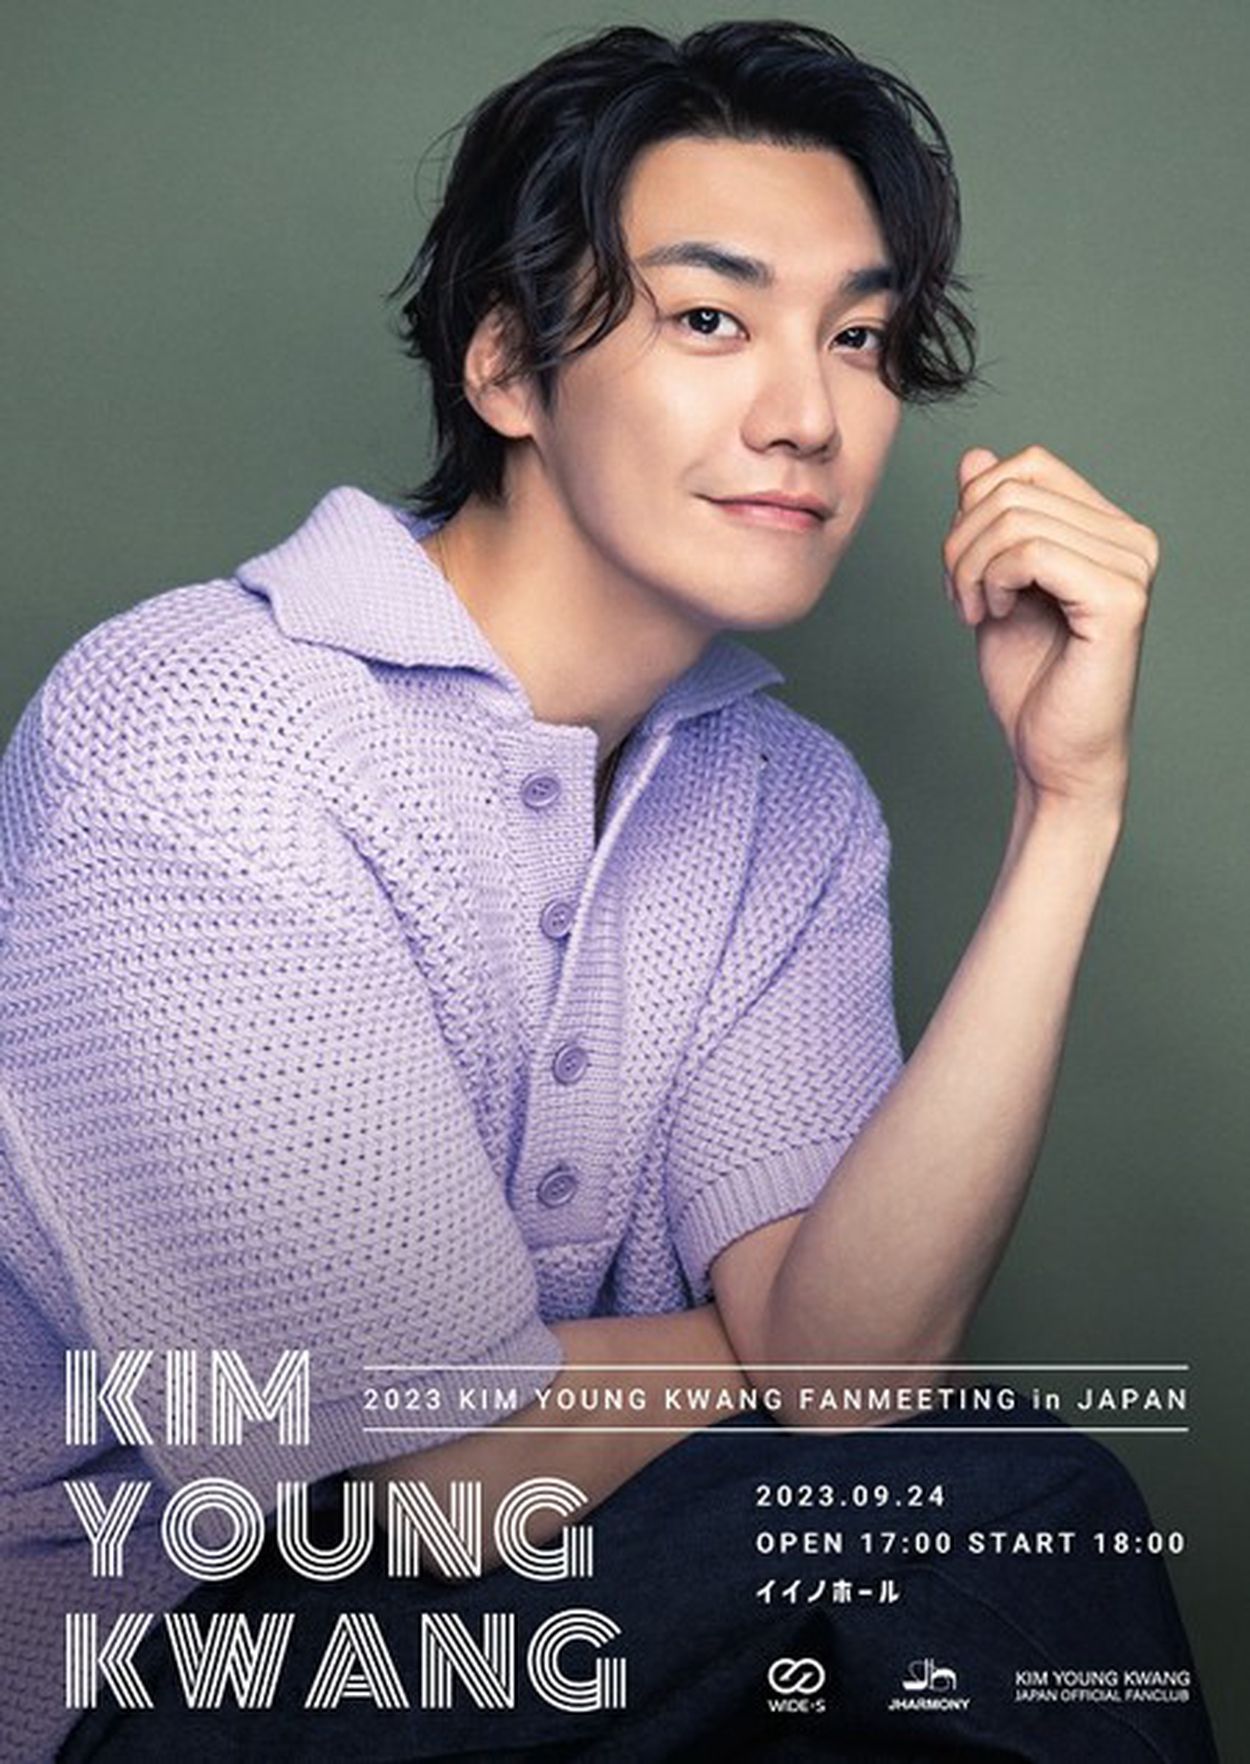 俳優キム・ヨングァン、約4年ぶりとなる日本単独ファンミ開催決定！(WoW!Korea) - goo ニュース